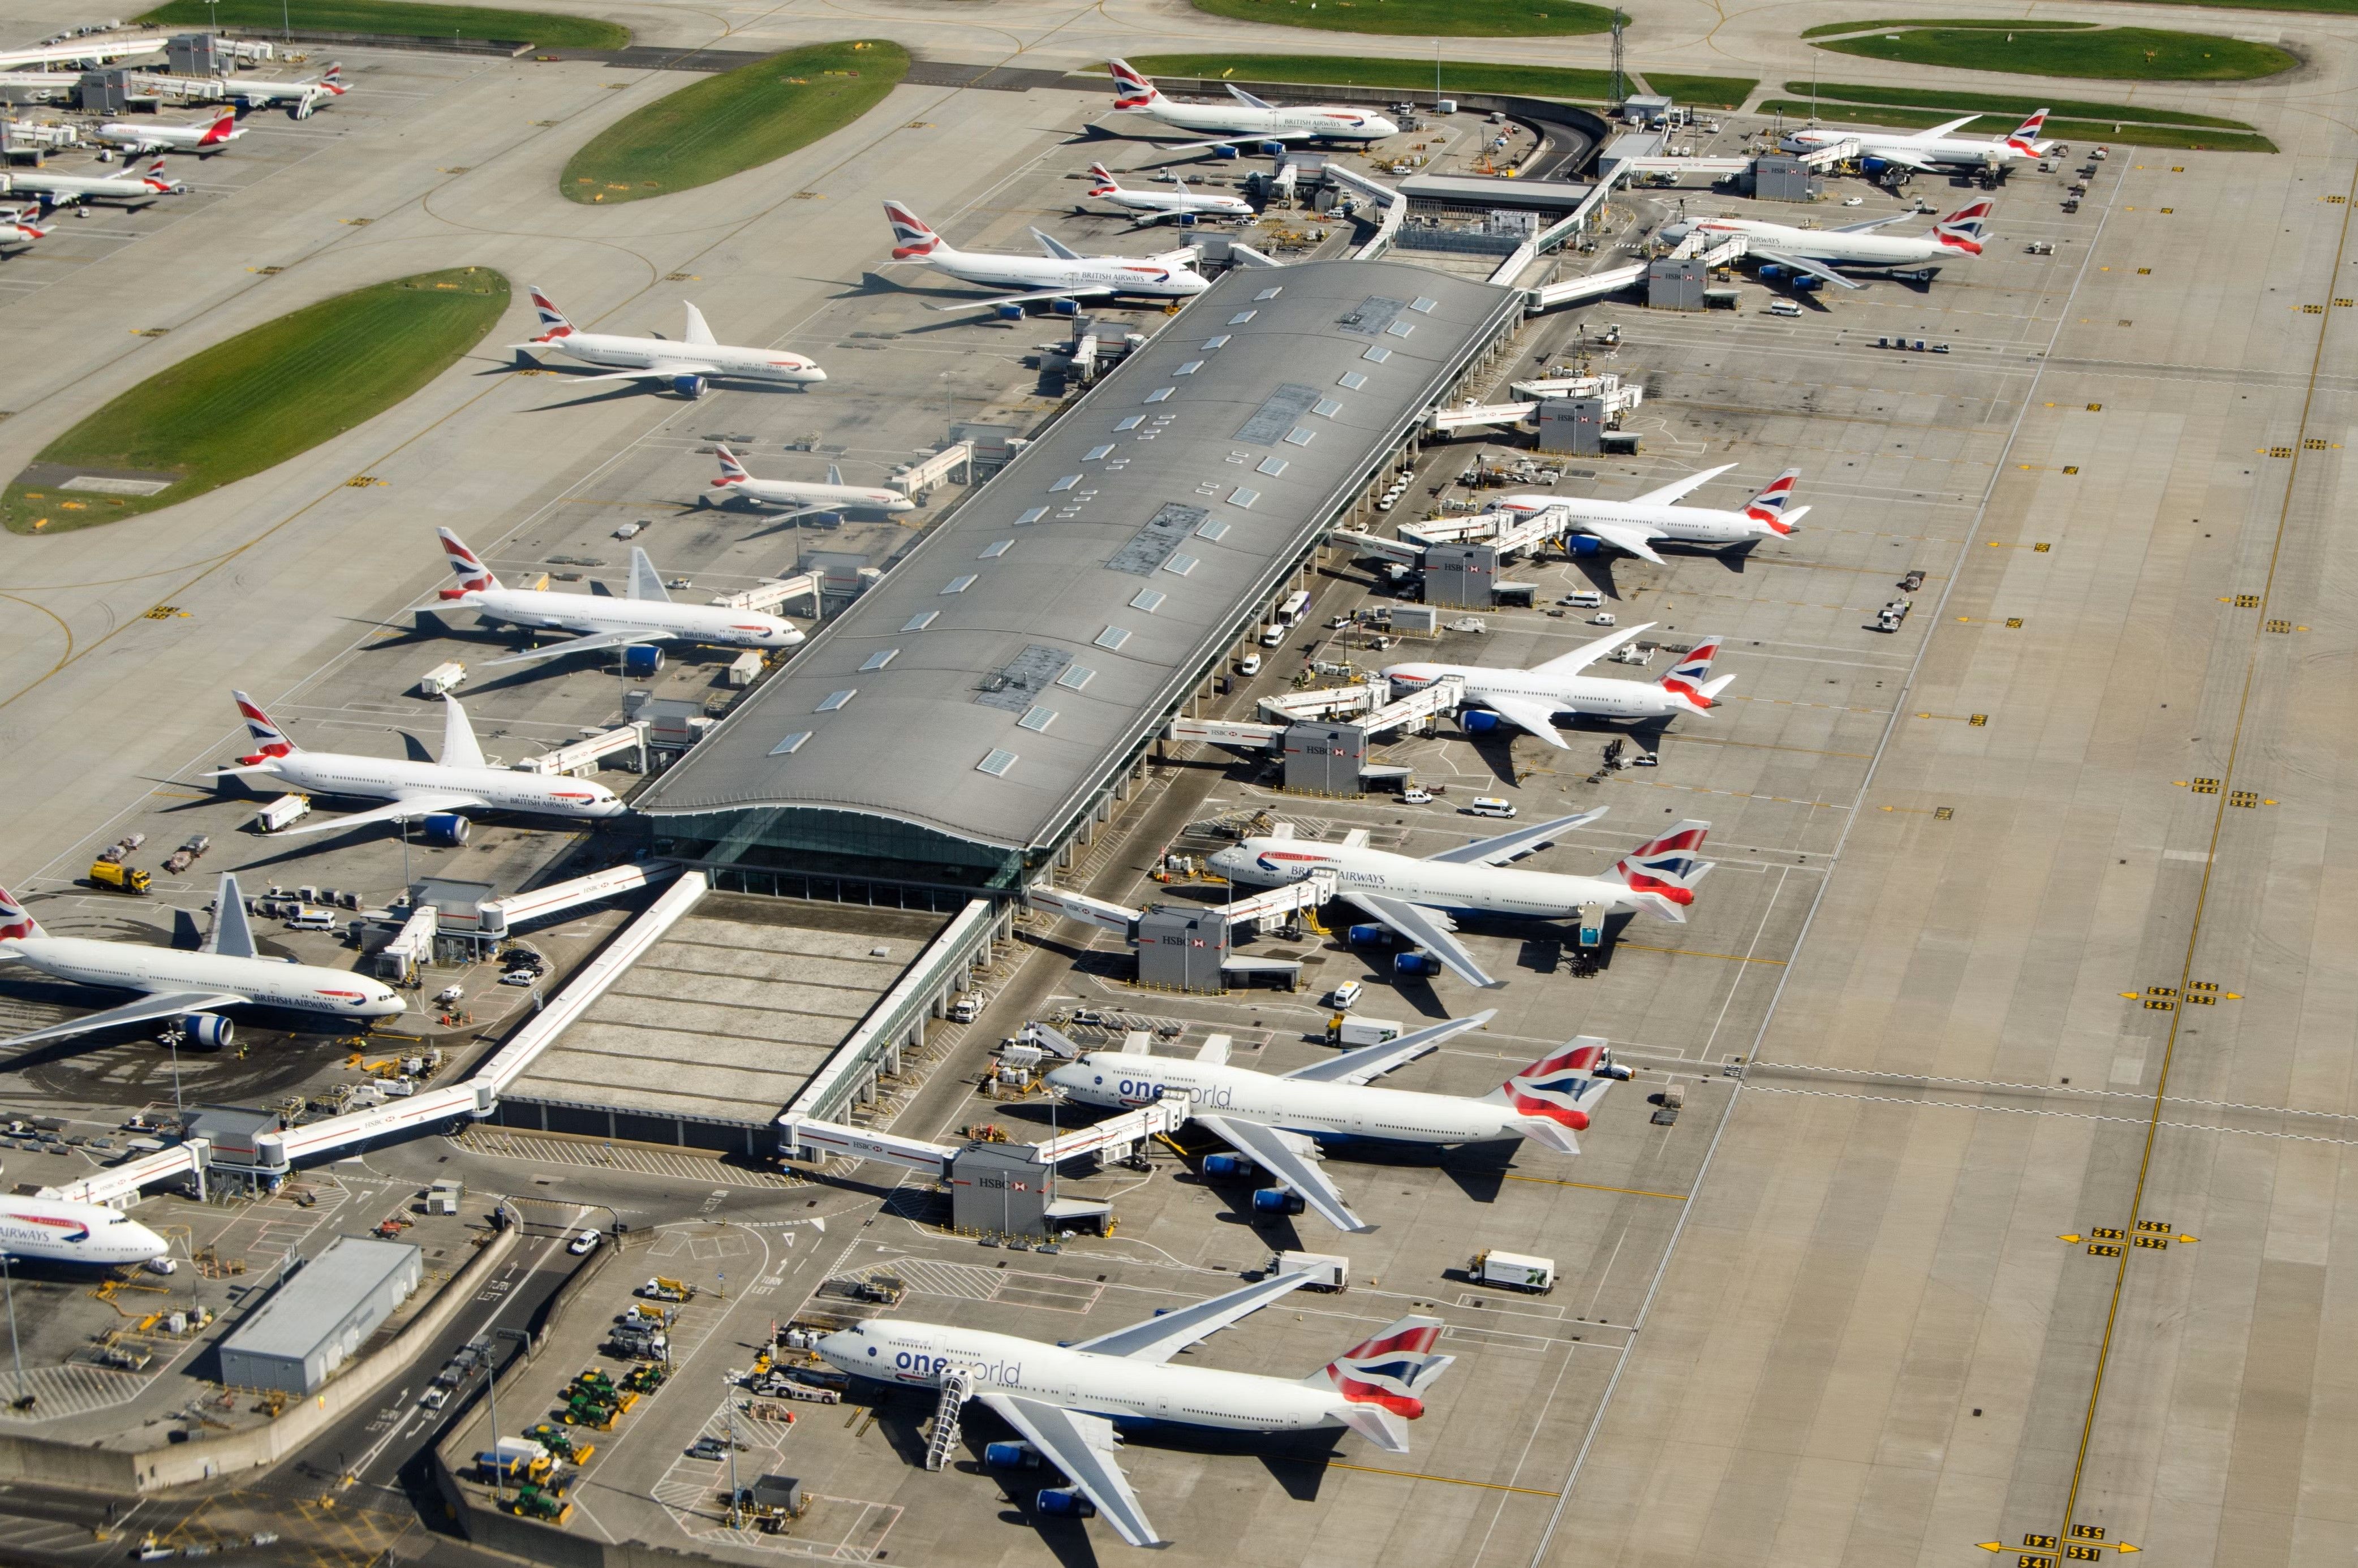 Several British Airways Aircraft parked at gates at London Heathrow Airport.